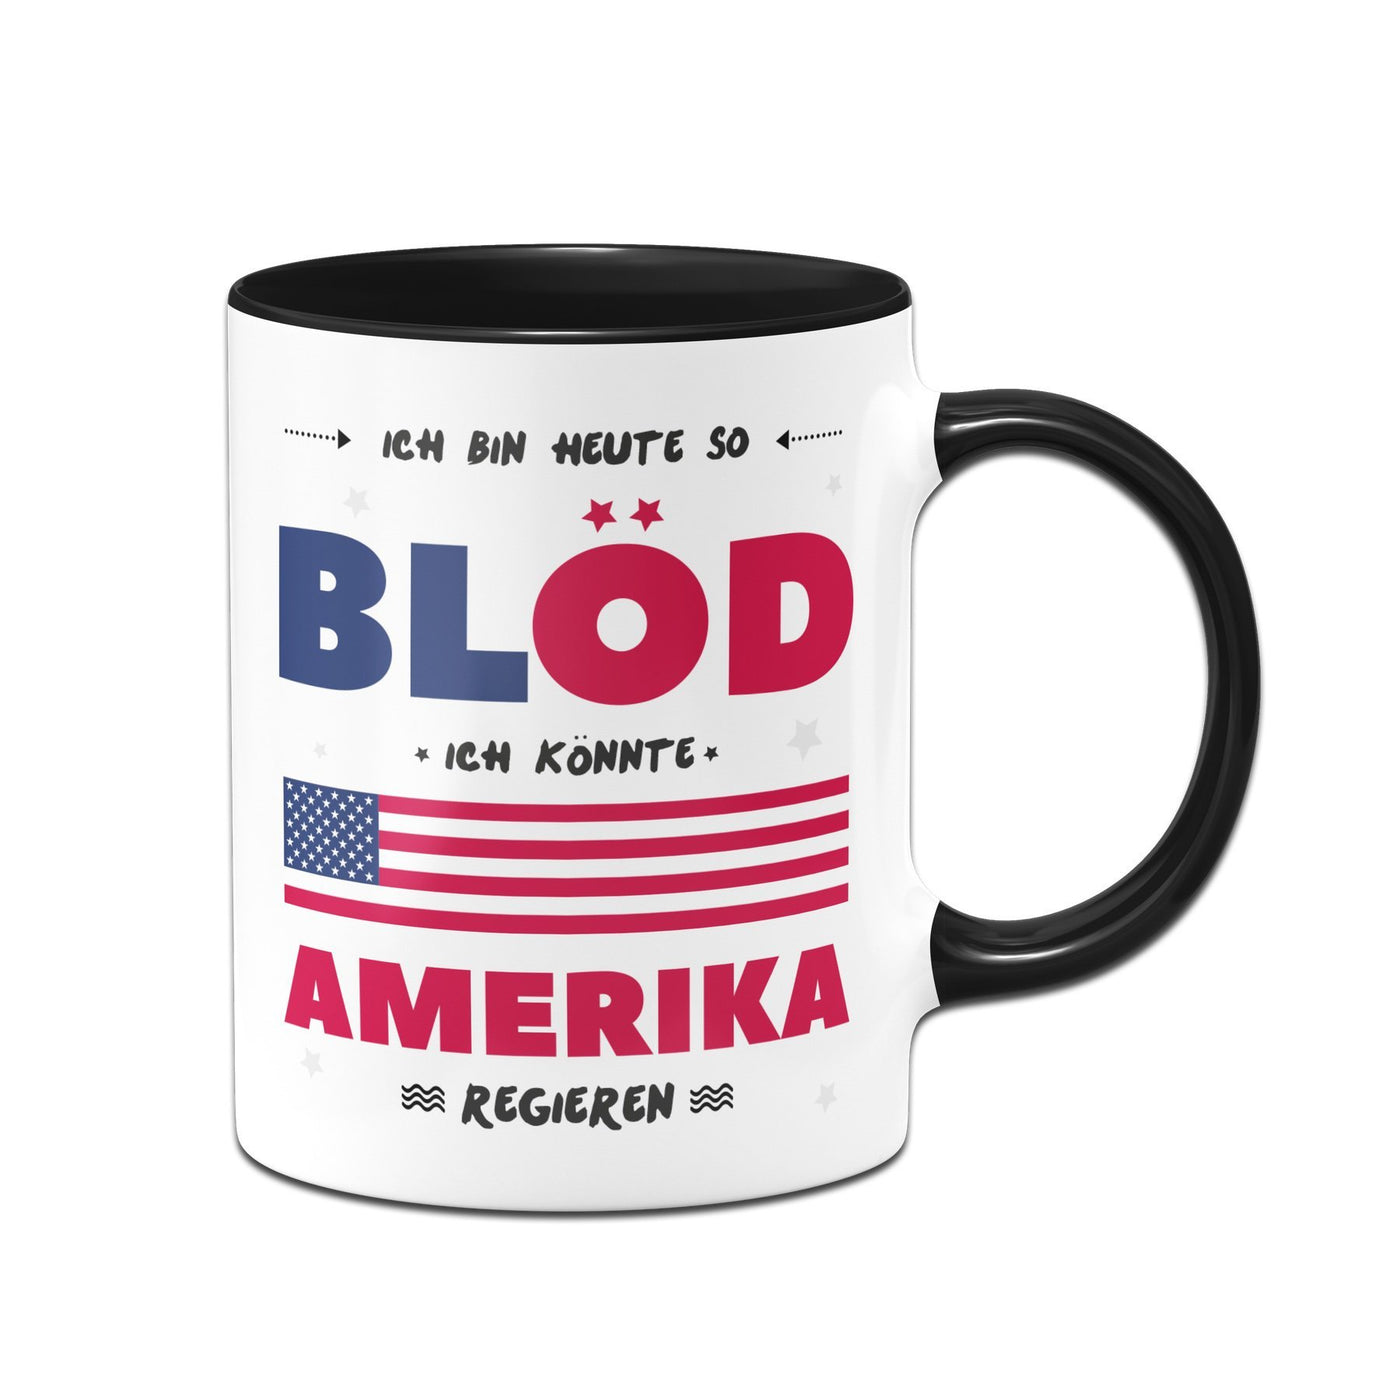 Bild: Tasse - Ich Bin heute so blöd ich könnte Amerika regieren Geschenkidee